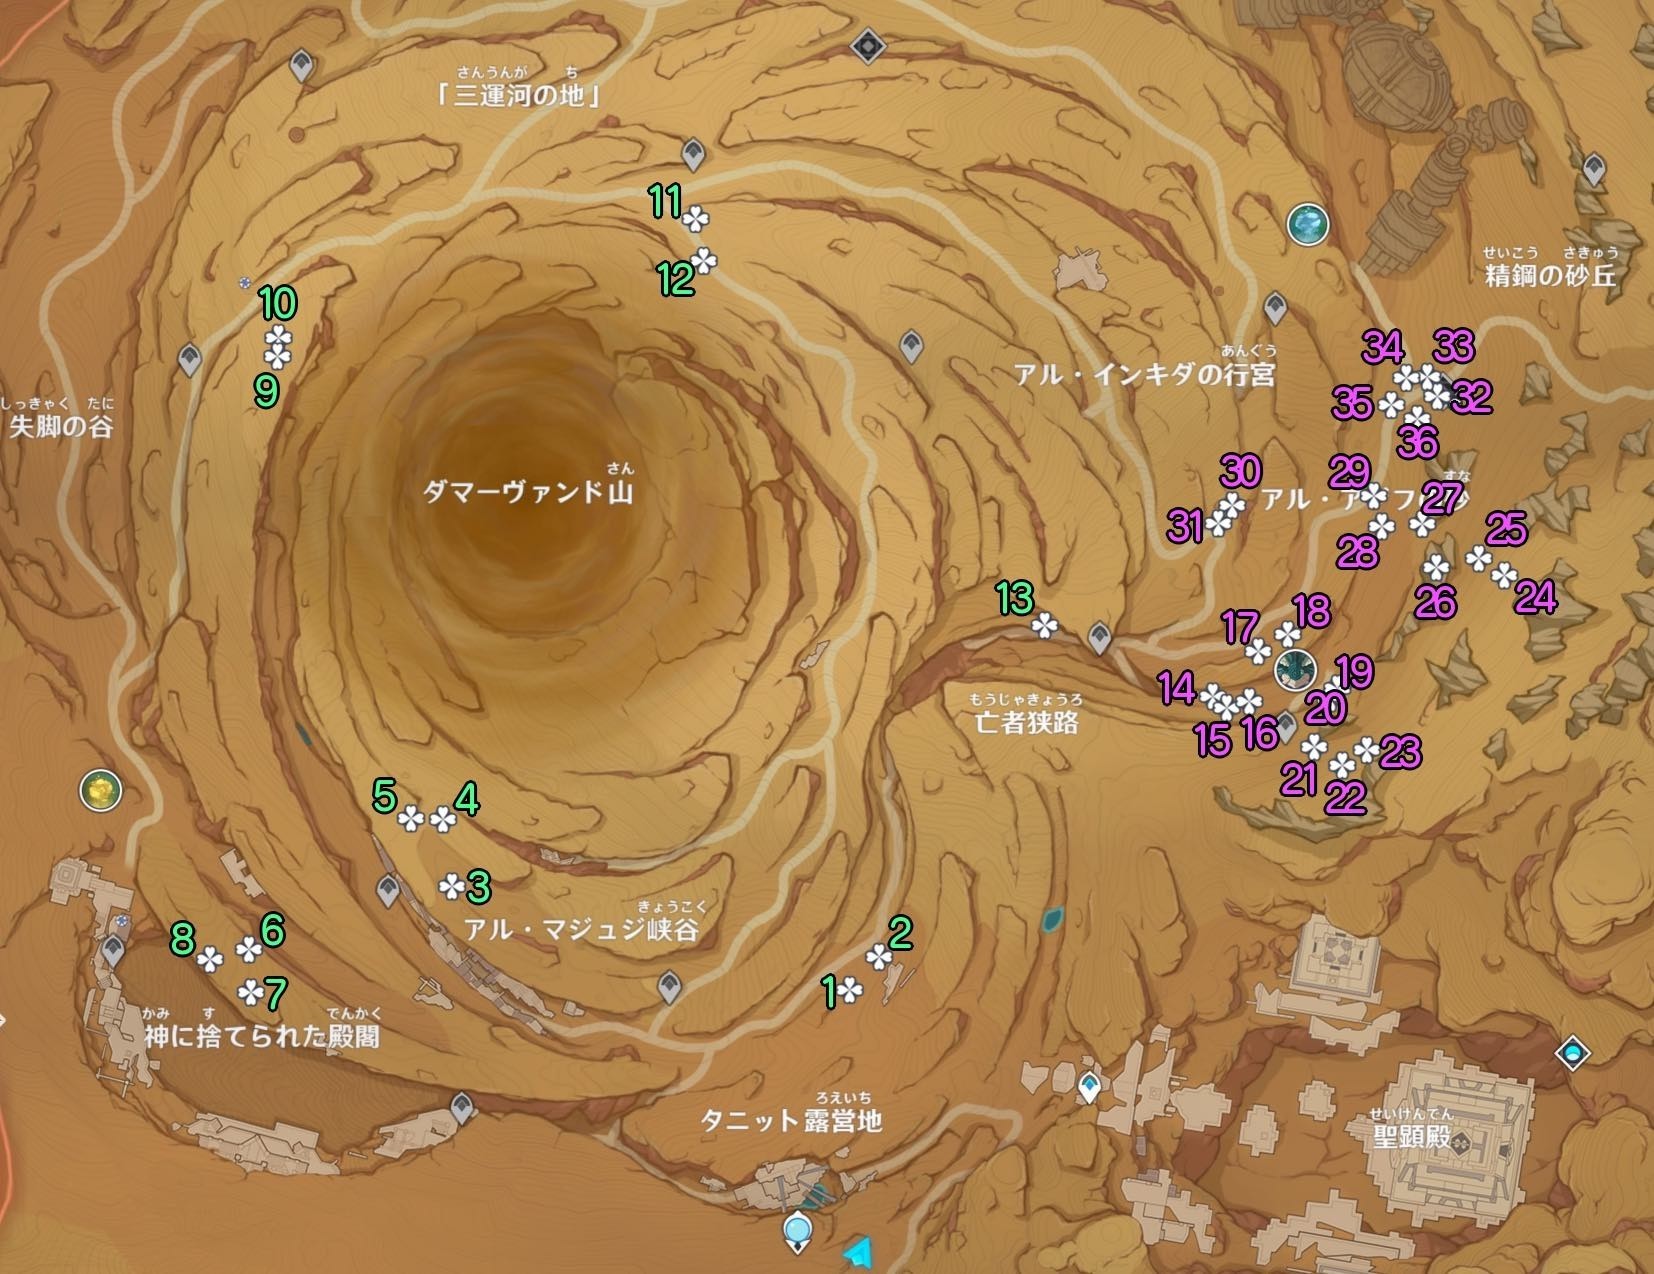 《原神》3.4沙脂蛹收集地圖點位及分佈 沙脂蛹怎麼獲得_地下區域